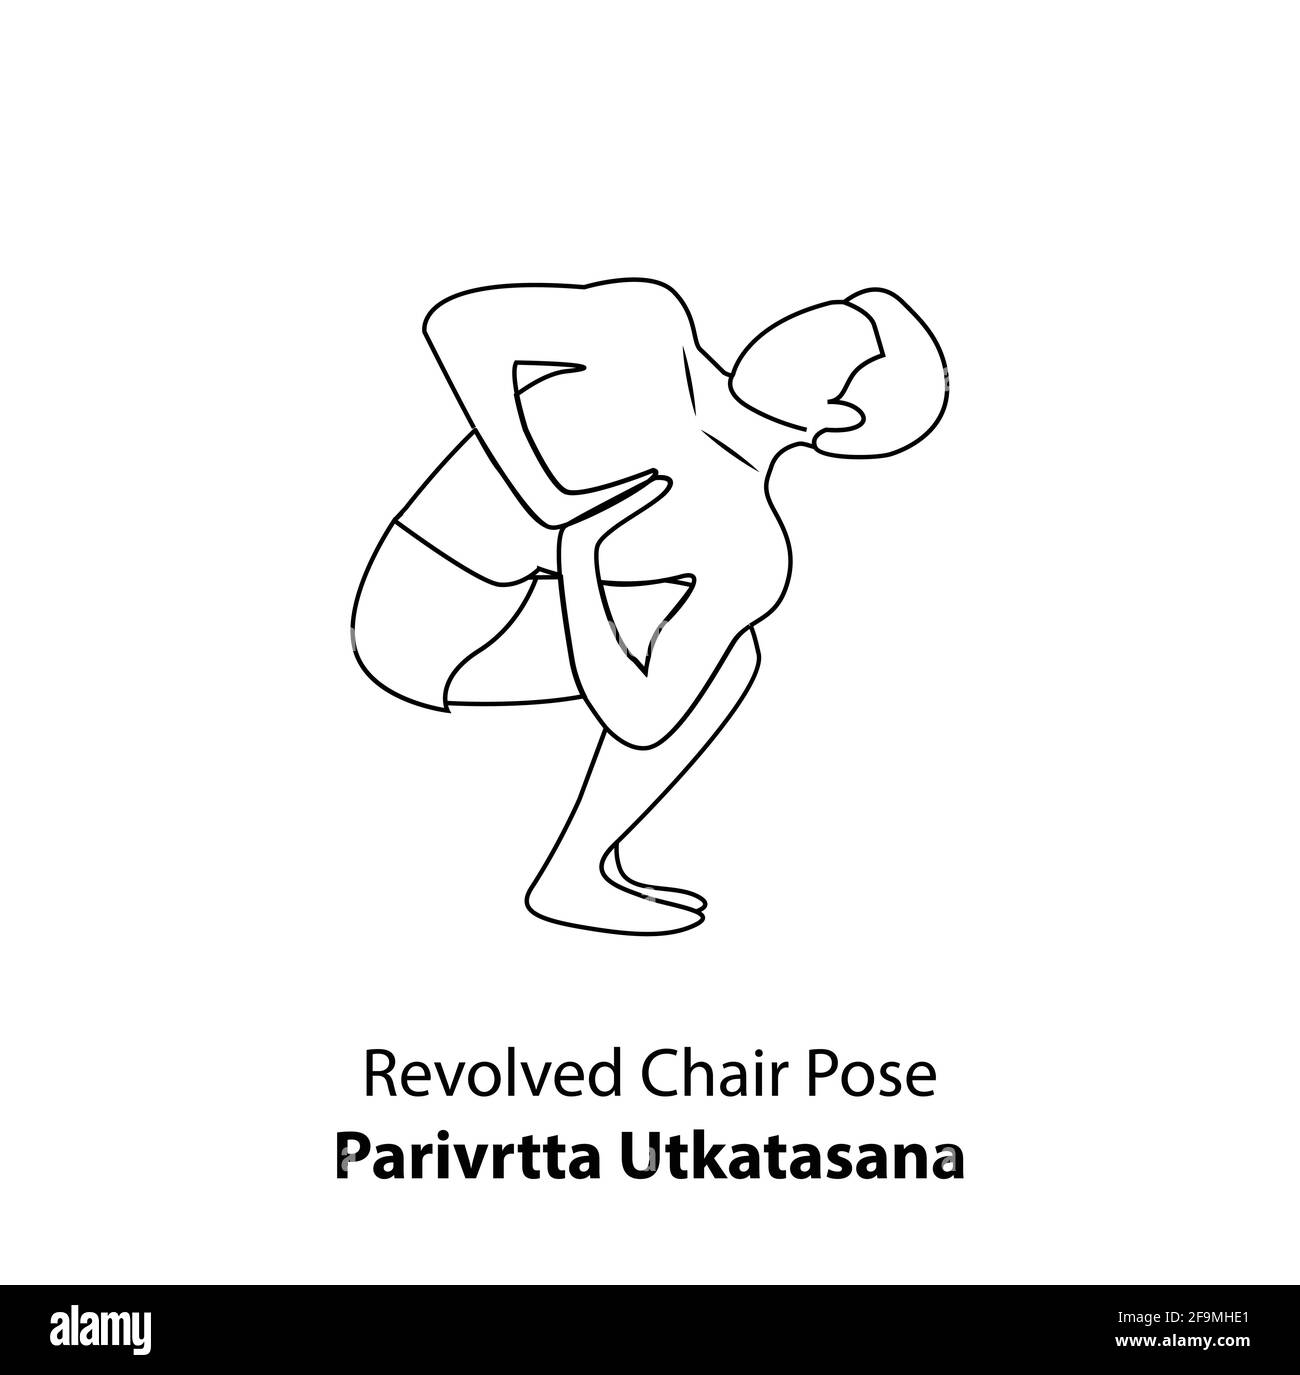 Homme pratiquant le yoga pose isolé contour Illustration. Homme debout dans une posture de chaise tournée ou paravrtta utkatasana pose, icône de la ligne de Yoga Asana Illustration de Vecteur